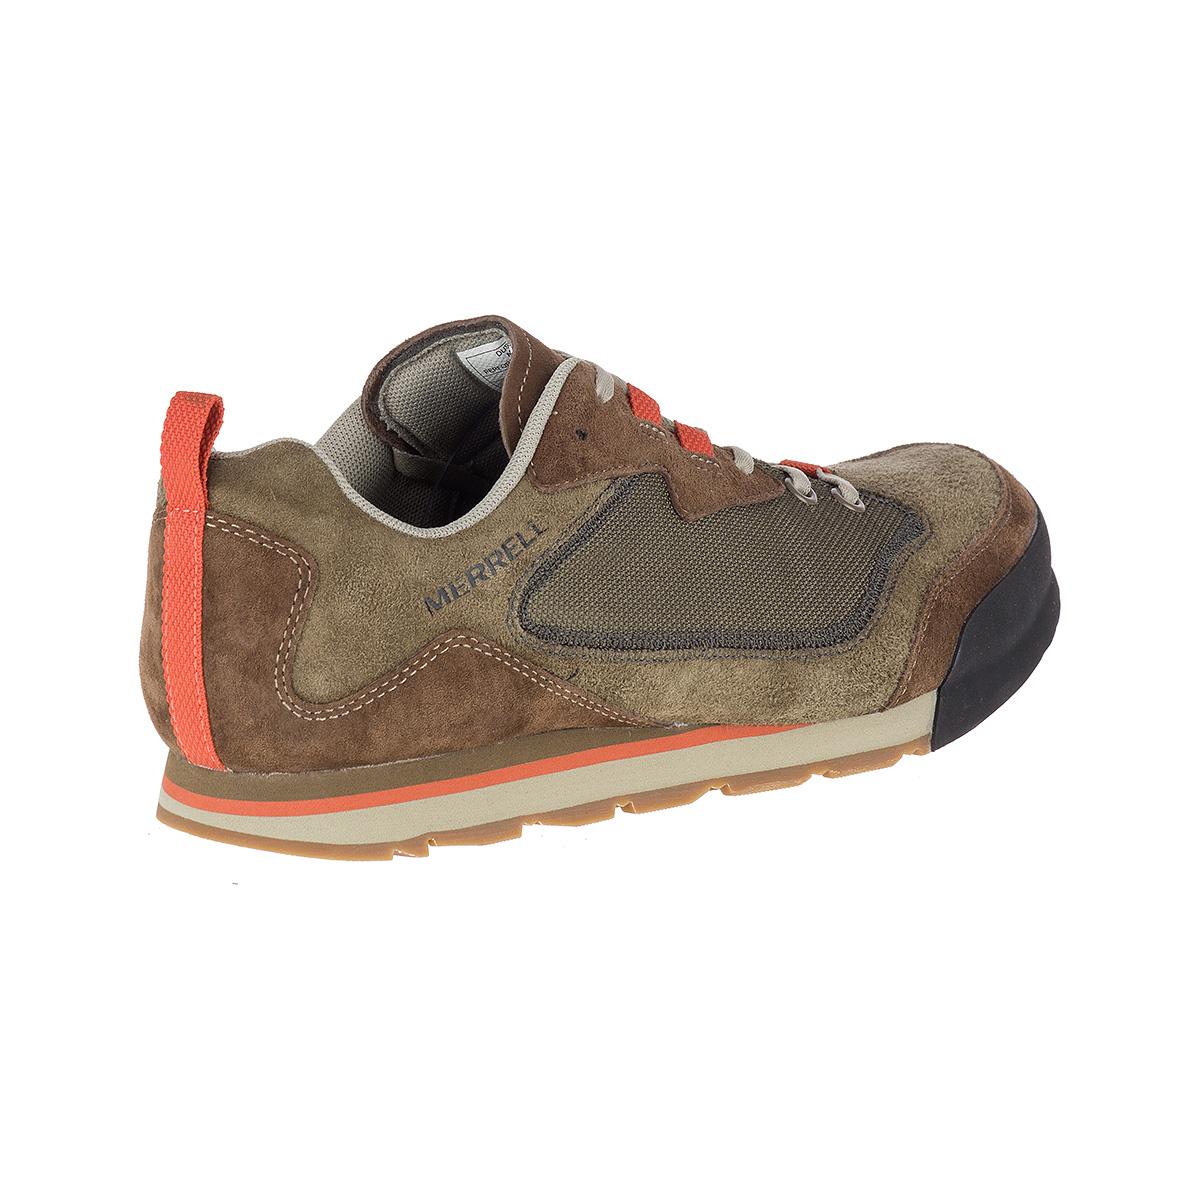 merrell men's burnt rock travel suede hiking shoe